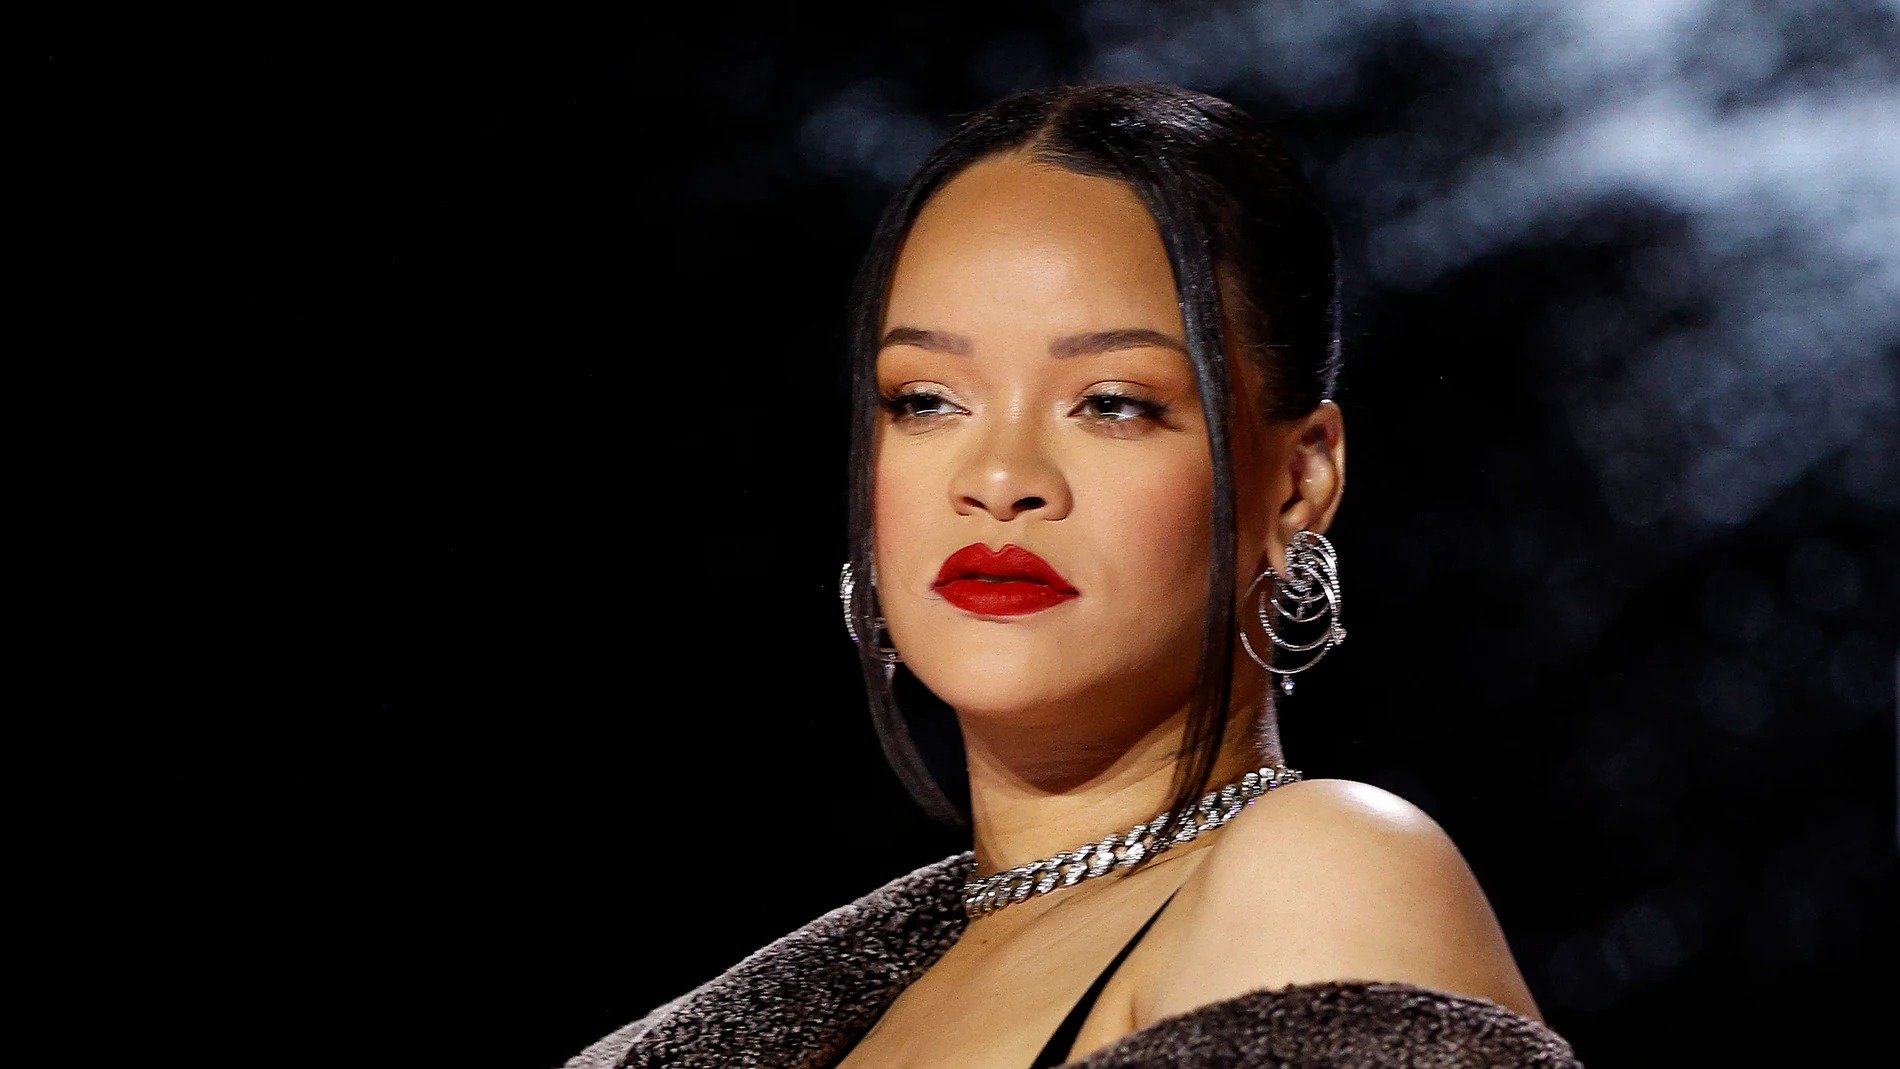 El nacimiento de su segundo hijo cambia los negocios de Rihanna